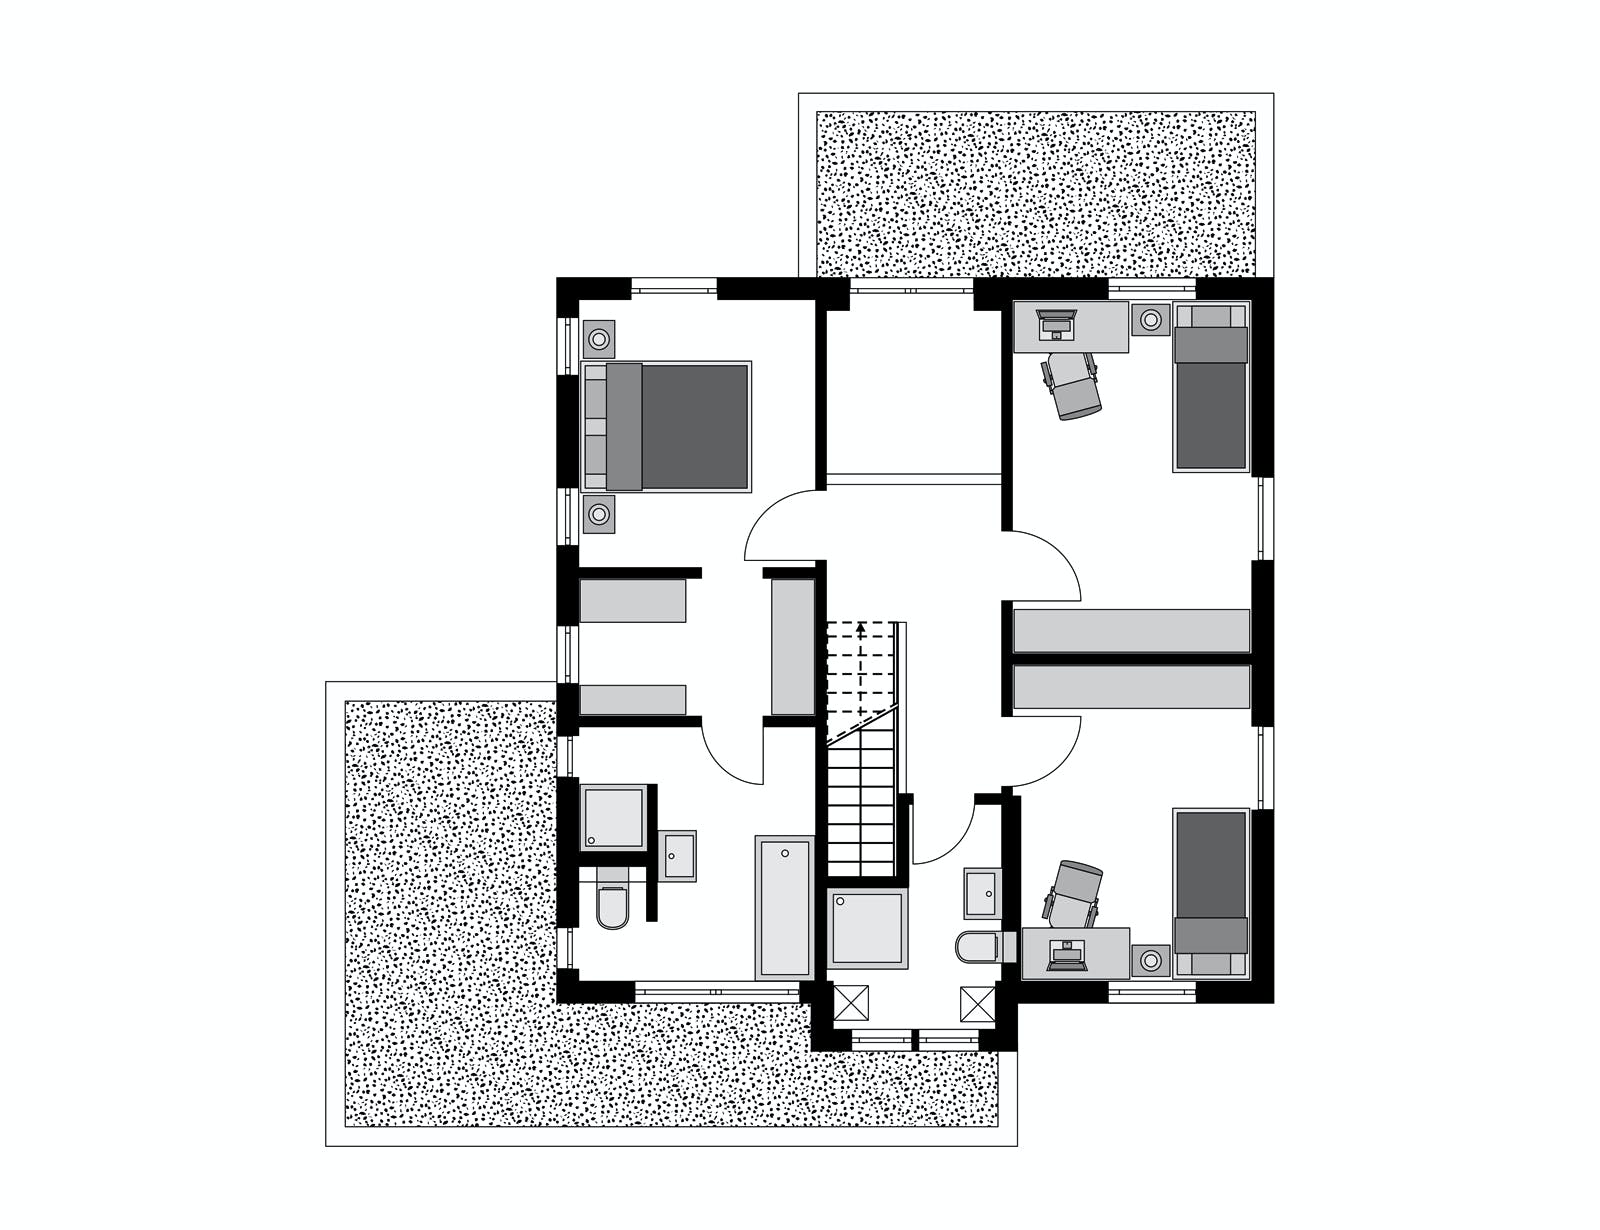 Fertighaus Klassiker CITY Gestaltungsidee GL 08 von STREIF Haus, Cubushaus Grundriss 2